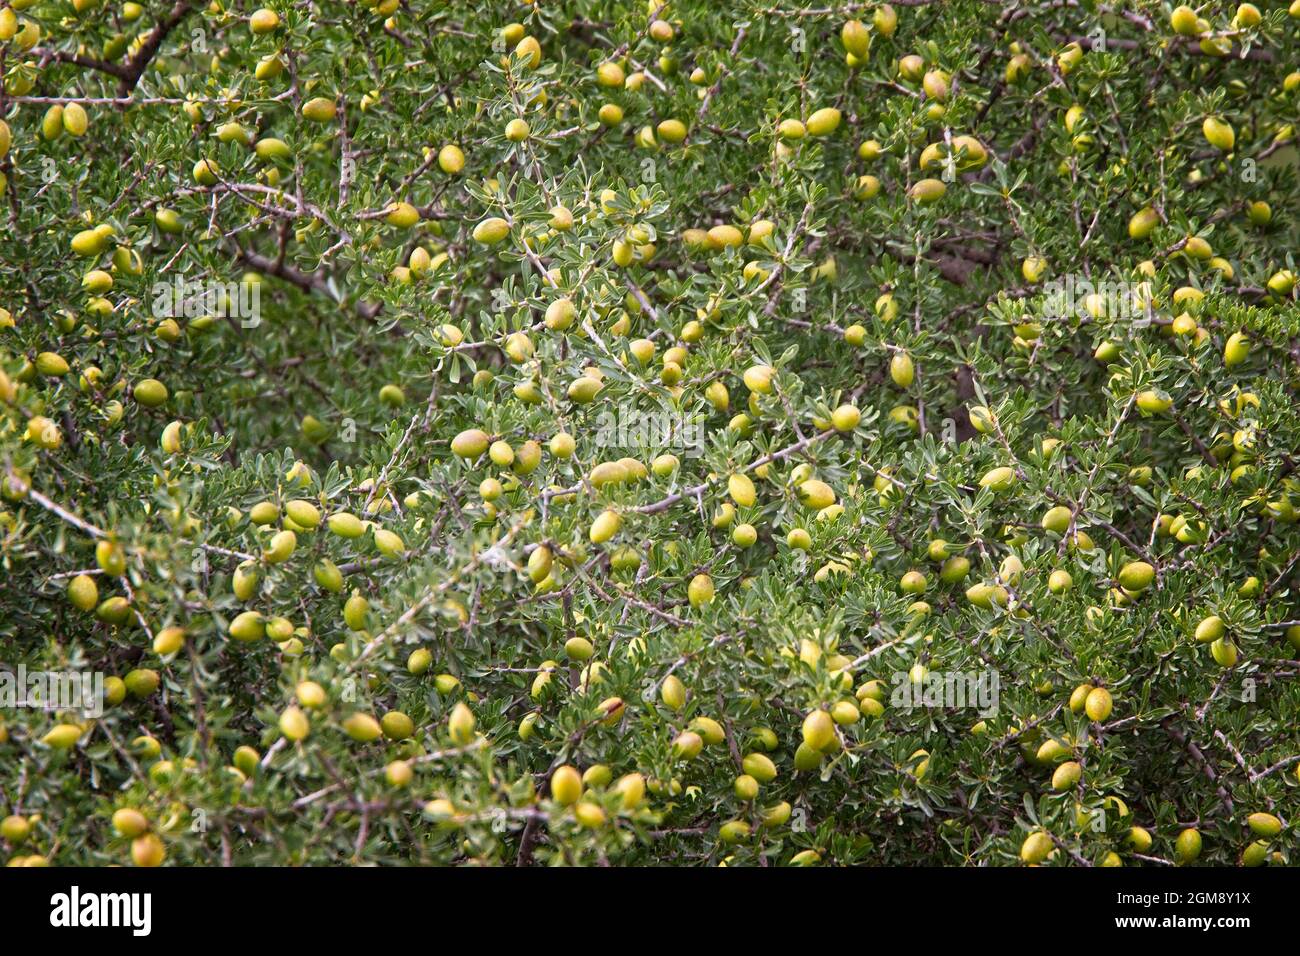 Árbol frutado de Argán (Argania spinosa) del que se recoge aceite de argán, cerca de Agadir, Marruecos. Foto de stock